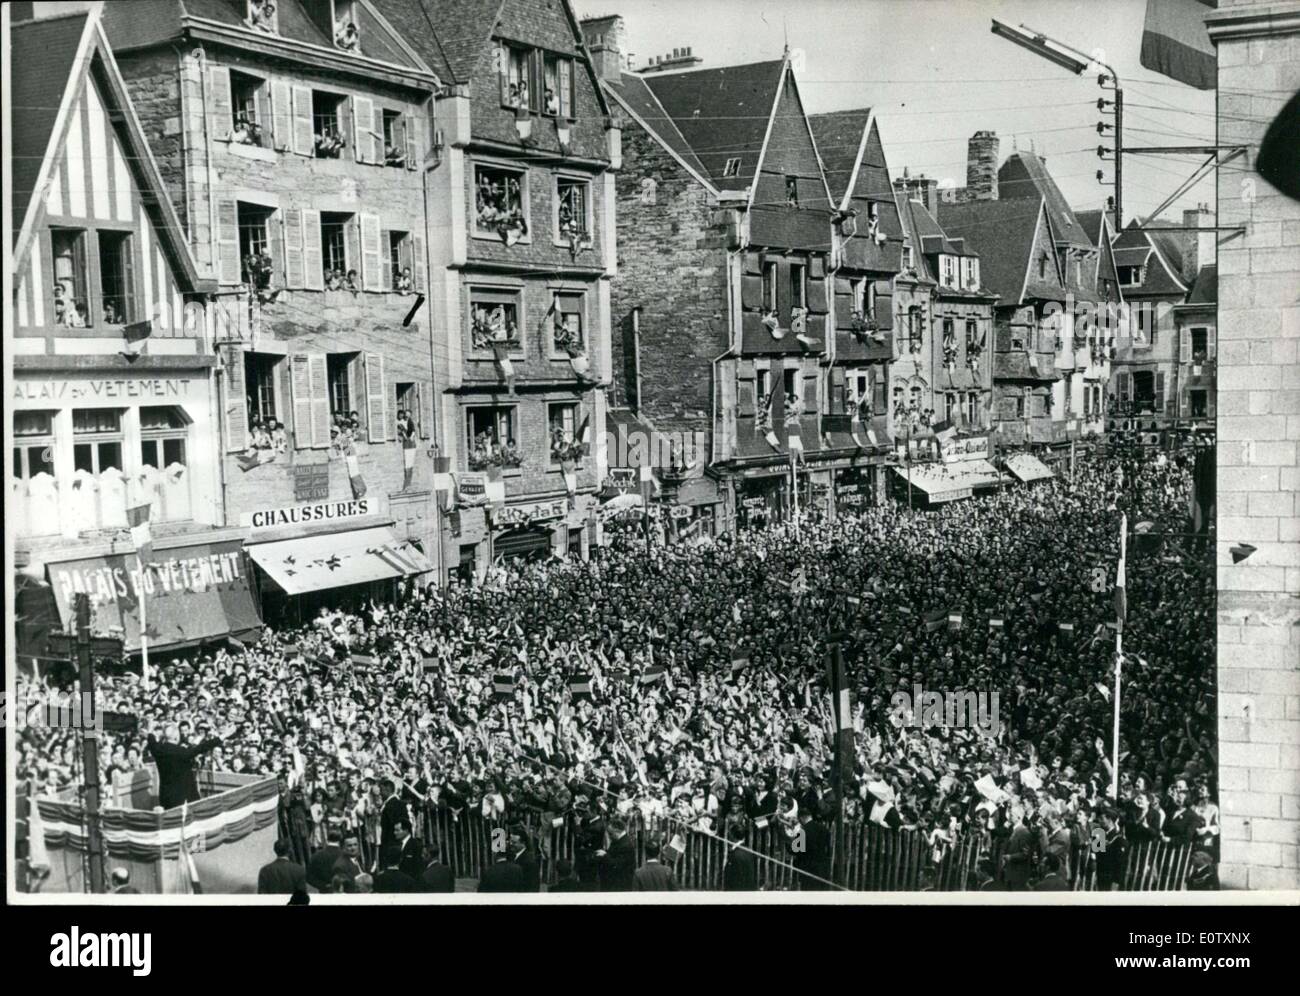 Sett. 09, 1960 - folla durante il generale de Gaulle il discorso a Lannion Foto Stock